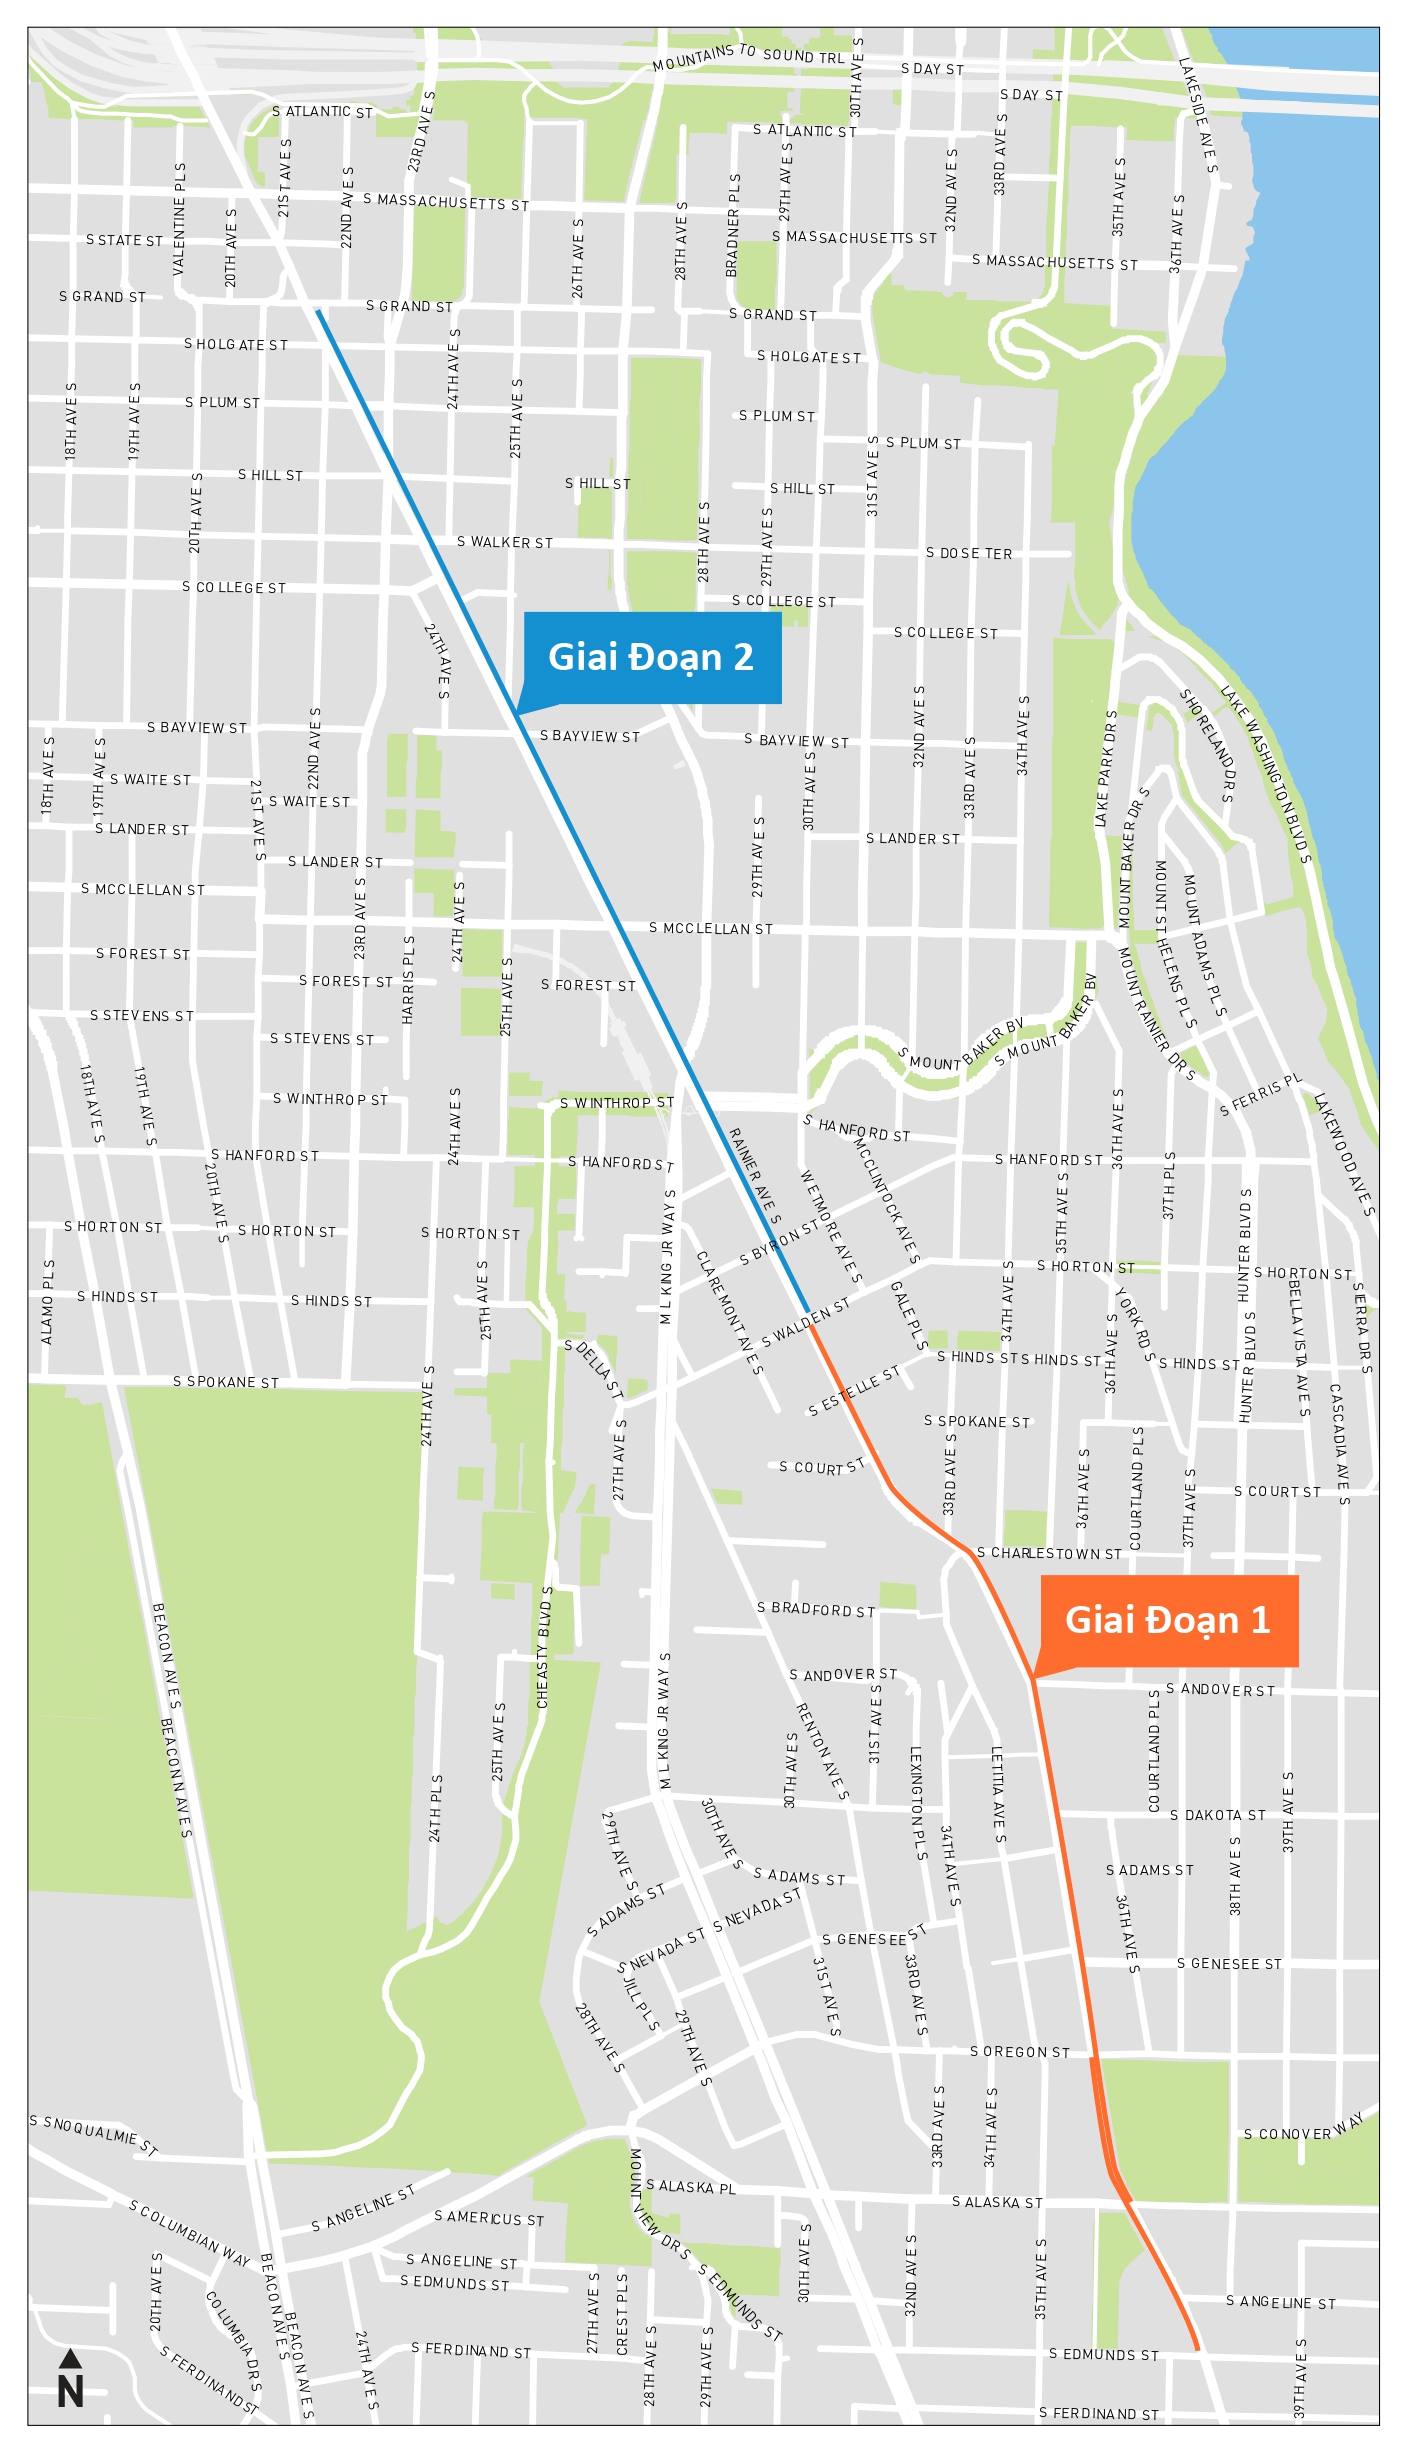 Bản đồ khu vực dự án cho Làn Đường Chỉ Dành Cho Xe Buýt của đường Rainier Ave S, cho thấy Giai đoạn 1 và 2 đi lên Rainier Ave S.